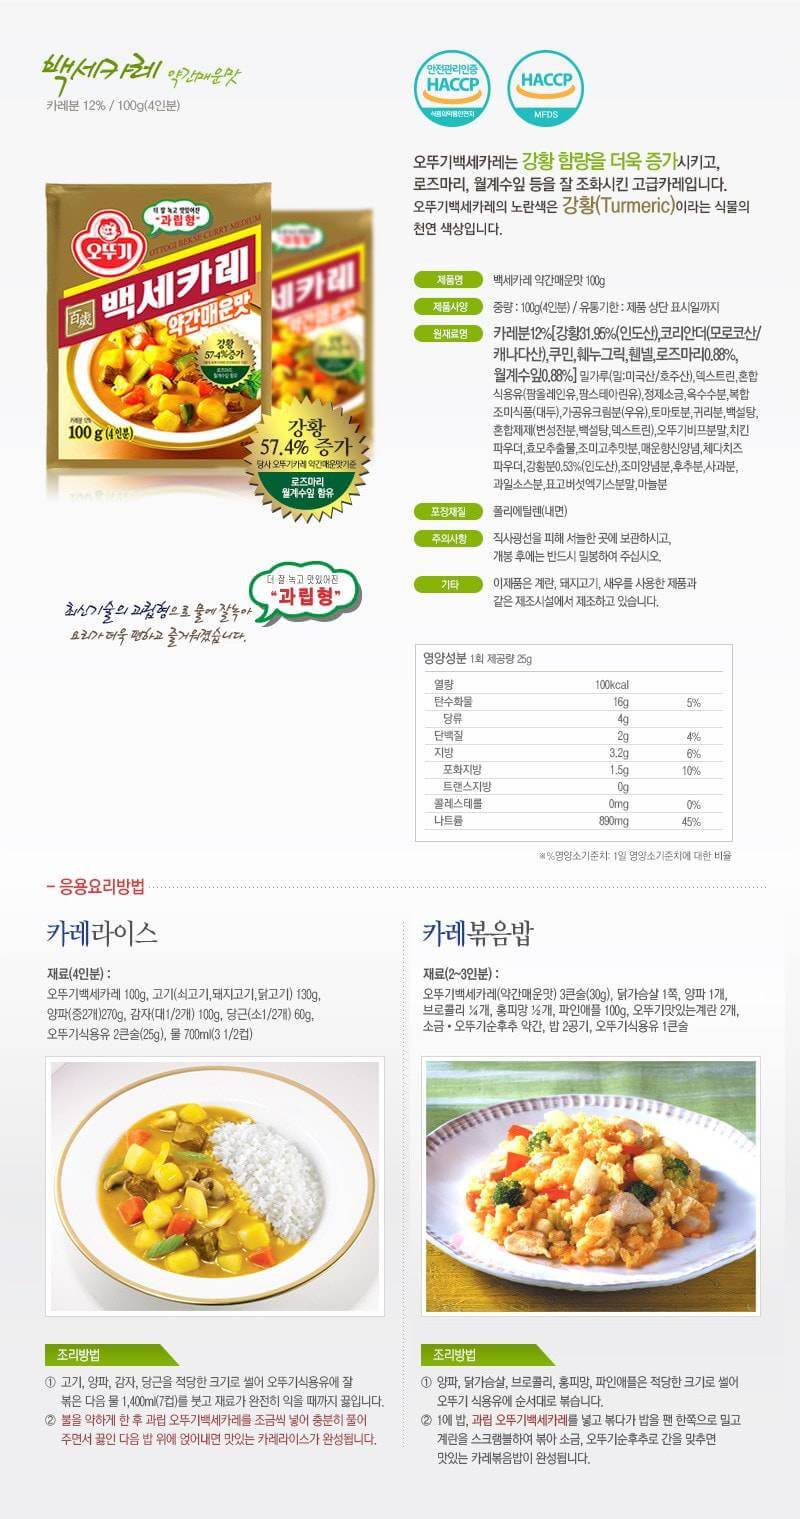 韓國食品-[오뚜기] 백세카레[약간매운맛] 100g